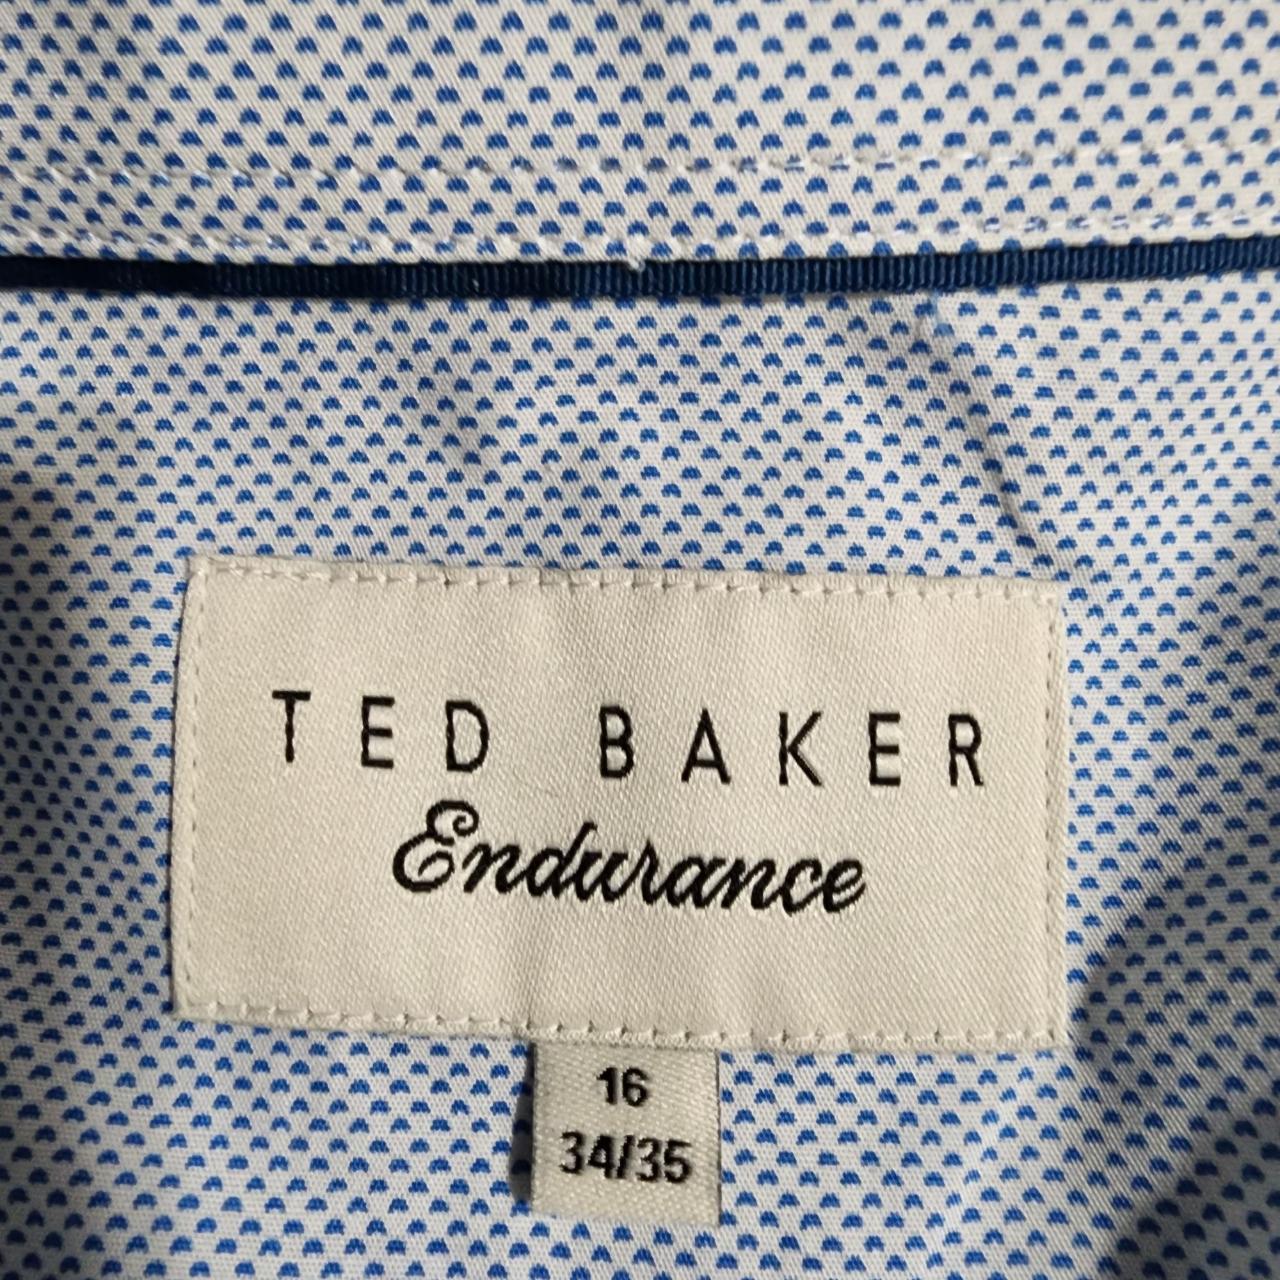 Ted Baker Men's Blue and White Shirt (3)